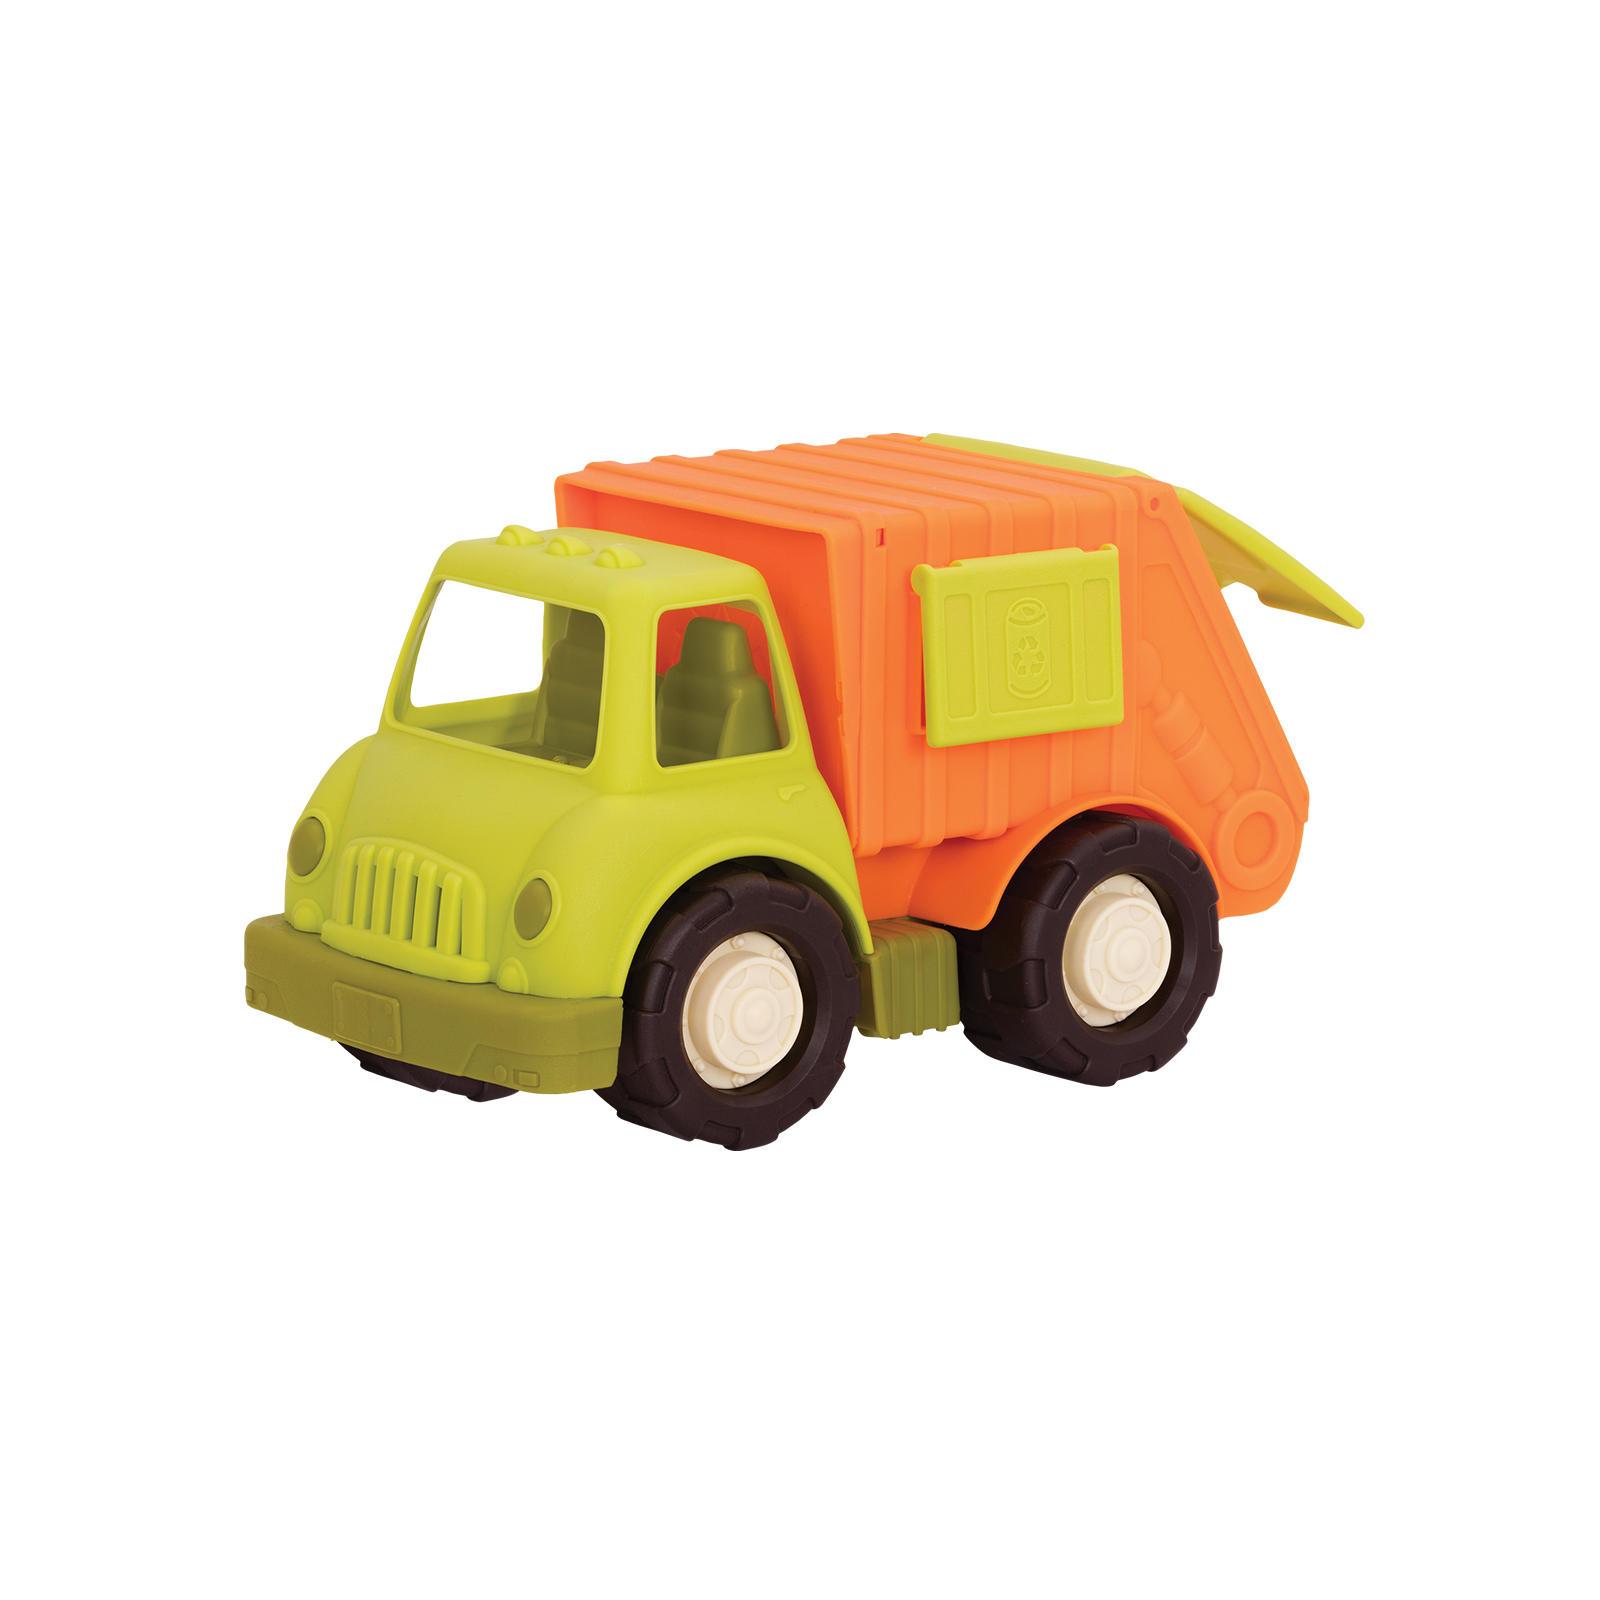 Развивающая игрушка Battat Баттатомобиль Эко-мусоровоз (BX2245D)